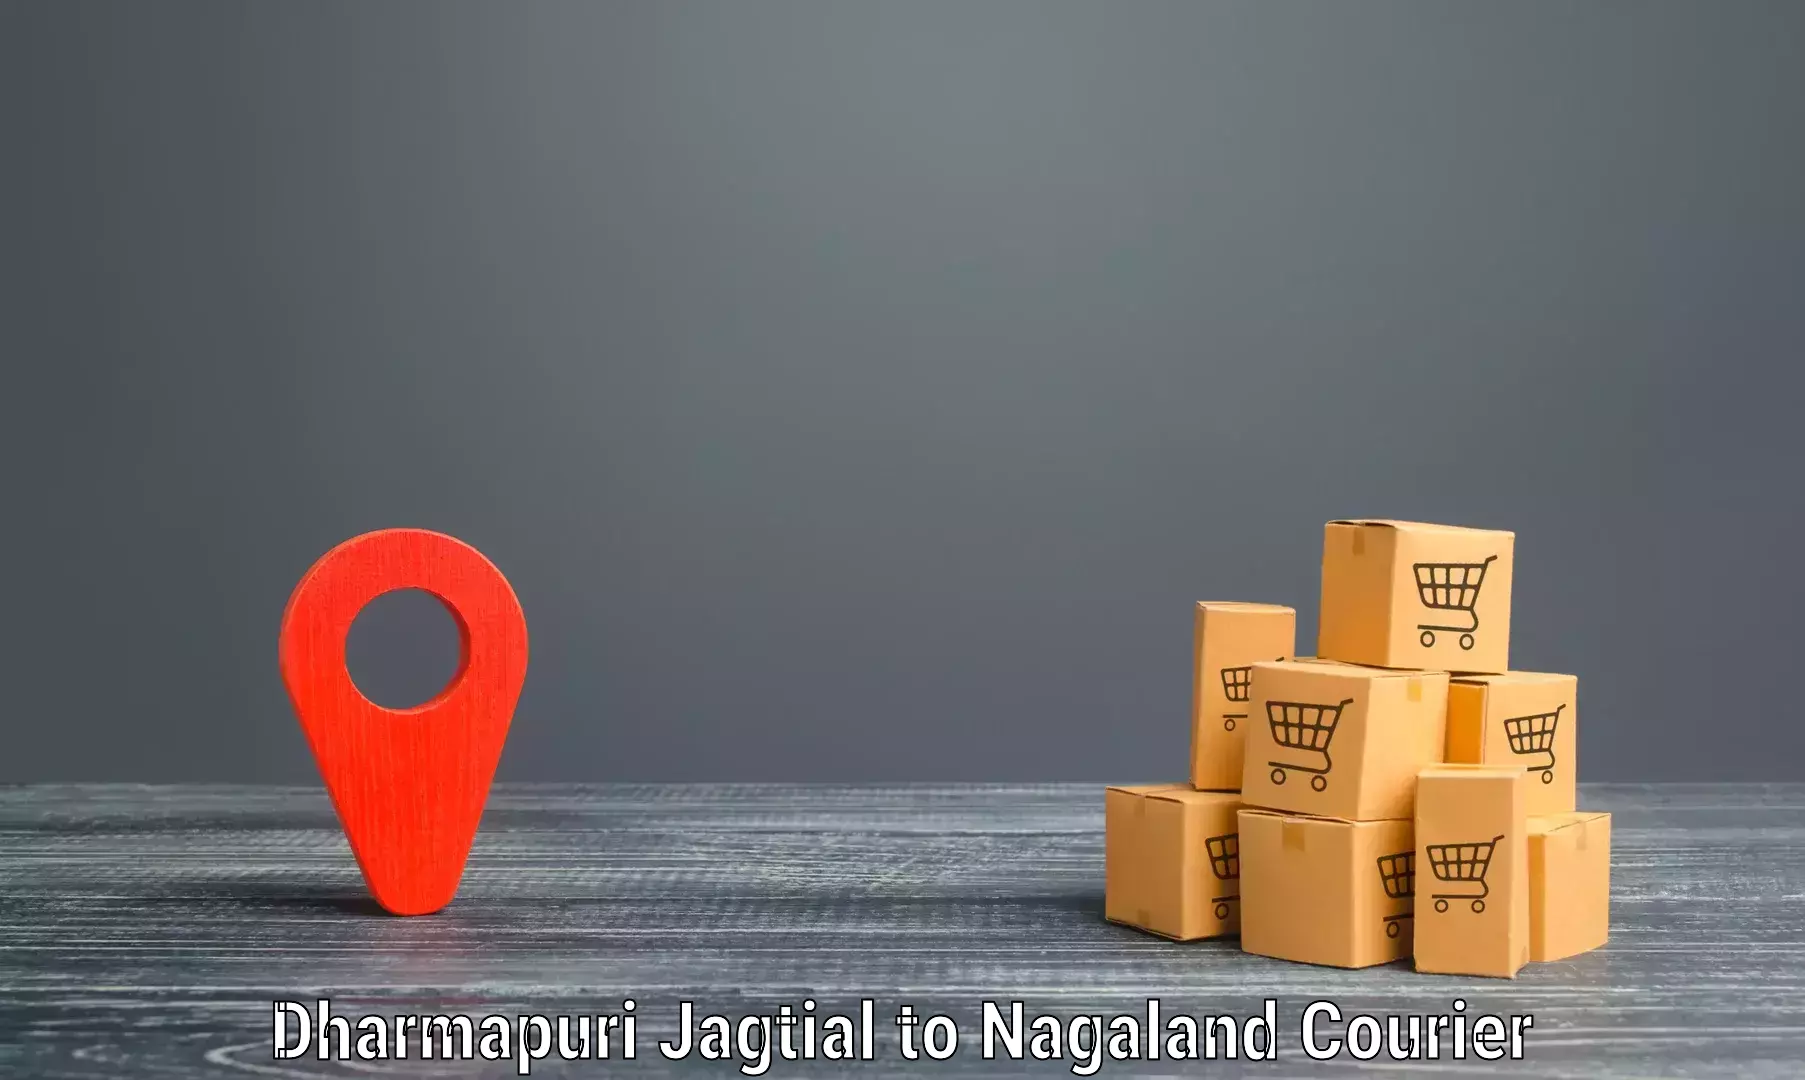 Custom courier packaging Dharmapuri Jagtial to Nagaland